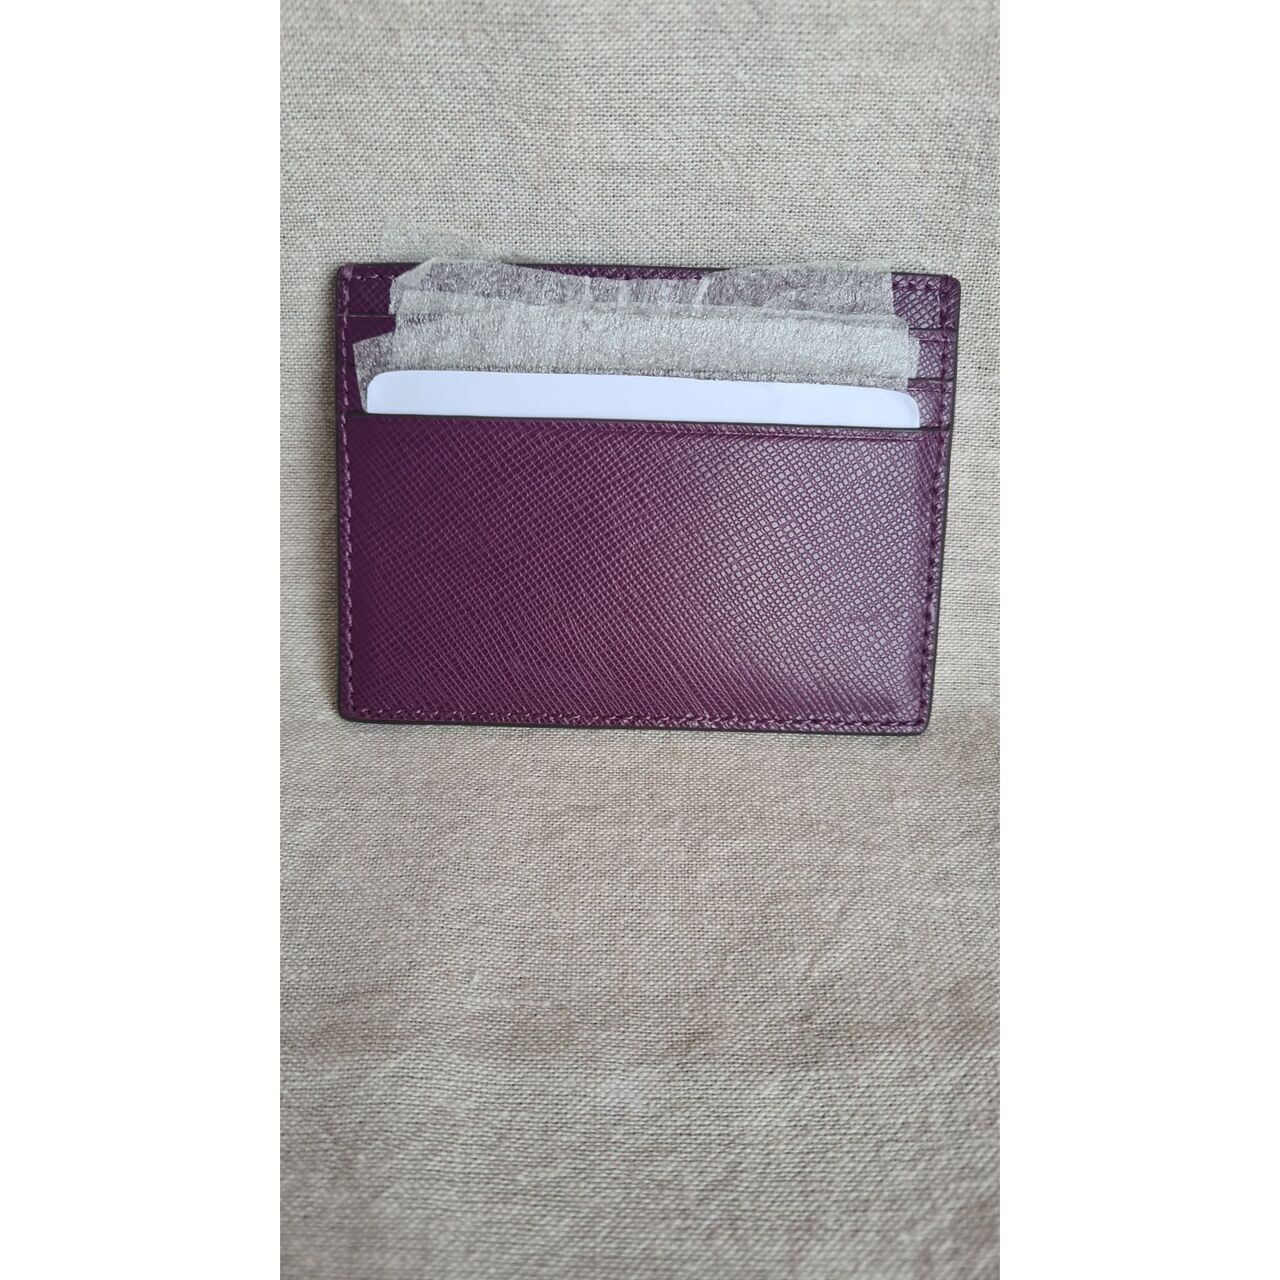 Kate Spade Madison Saffiano Leather Card Case